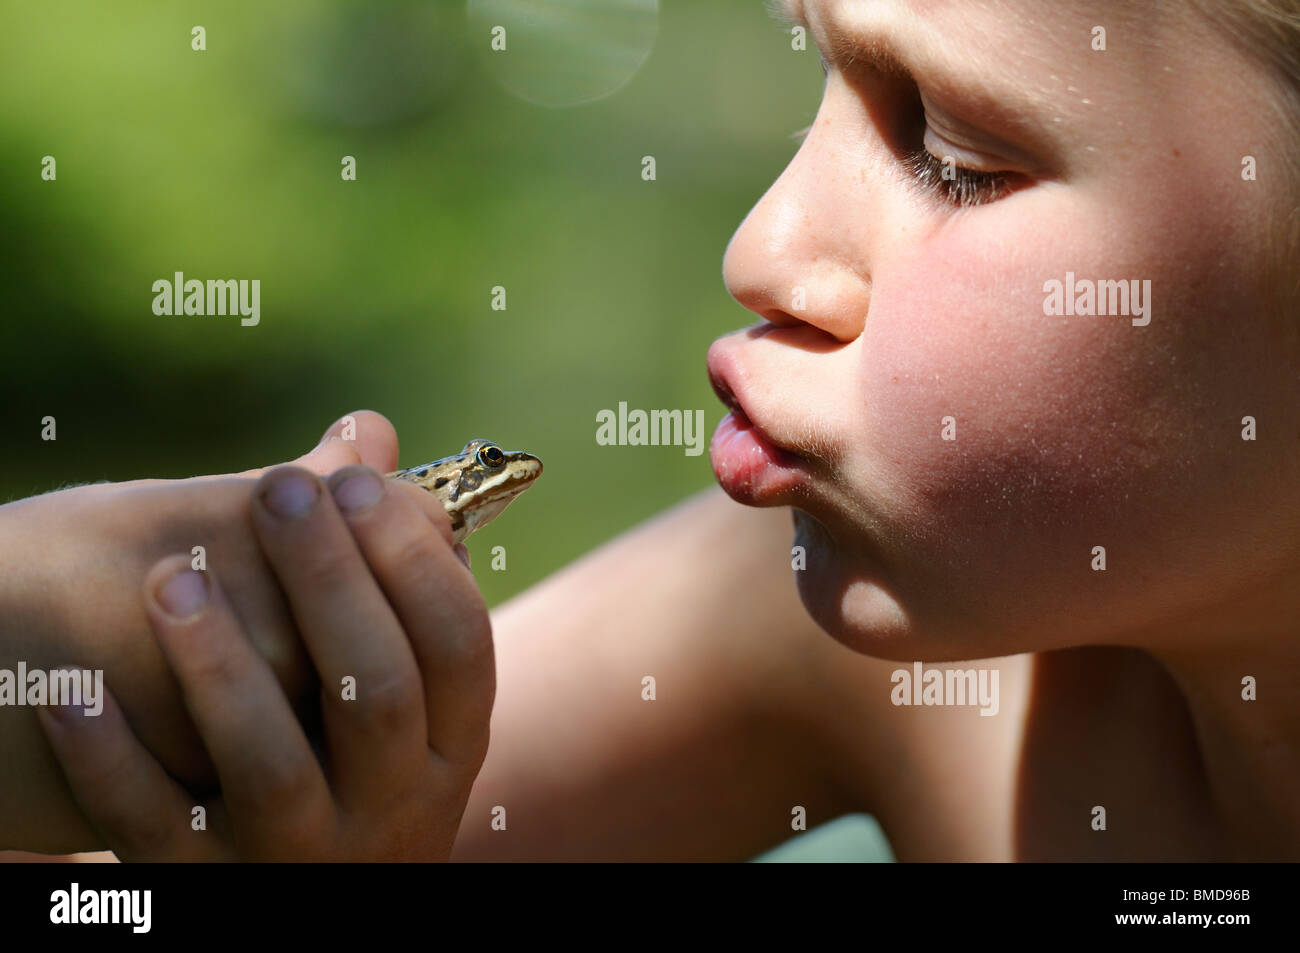 Stock Foto eines Kindes einen Frosch zu küssen. Stockfoto